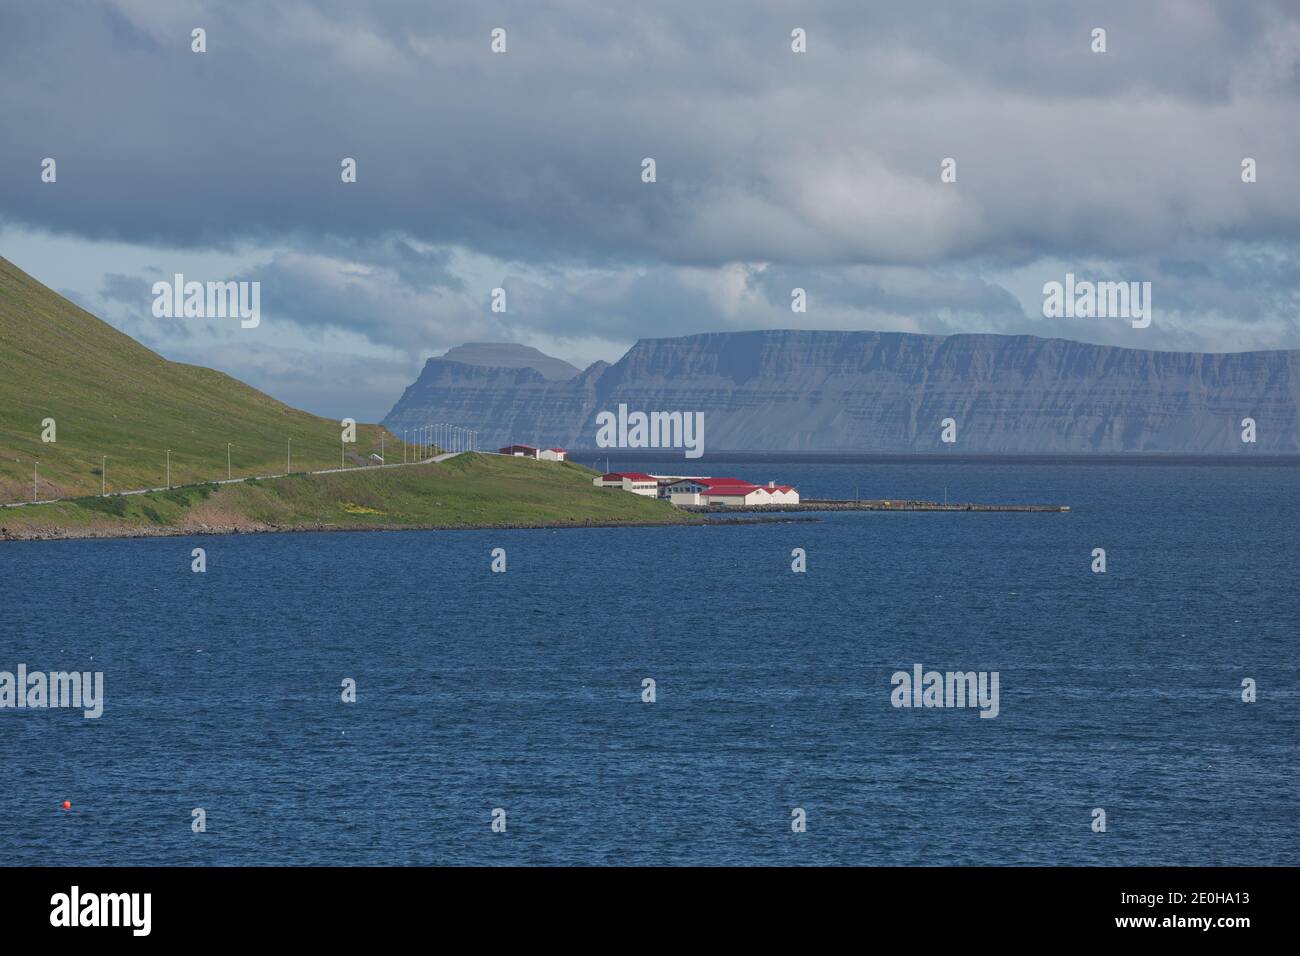 Schöne Aussicht und Landschaft des isländischen Fjords, das Dorf Isafjordur in Island umgibt. Stockfoto